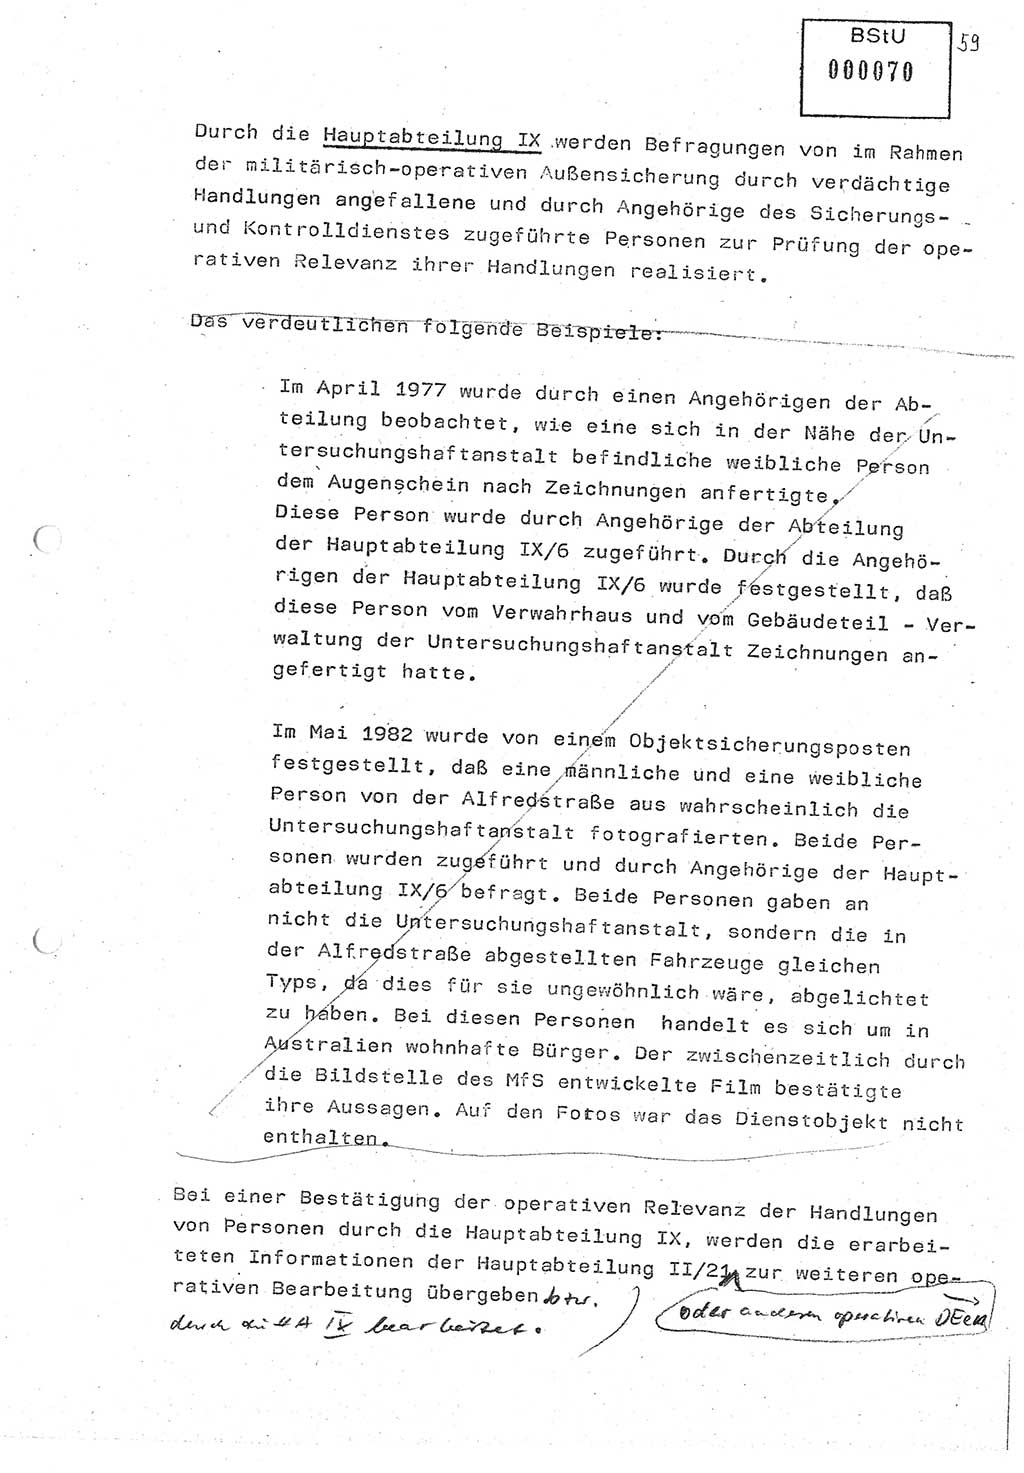 Diplomarbeit (Entwurf) Oberleutnant Peter Parke (Abt. ⅩⅣ), Ministerium für Staatssicherheit (MfS) [Deutsche Demokratische Republik (DDR)], Juristische Hochschule (JHS), Geheime Verschlußsache (GVS) o001-98/86, Potsdam 1986, Seite 70 (Dipl.-Arb. MfS DDR JHS GVS o001-98/86 1986, S. 70)